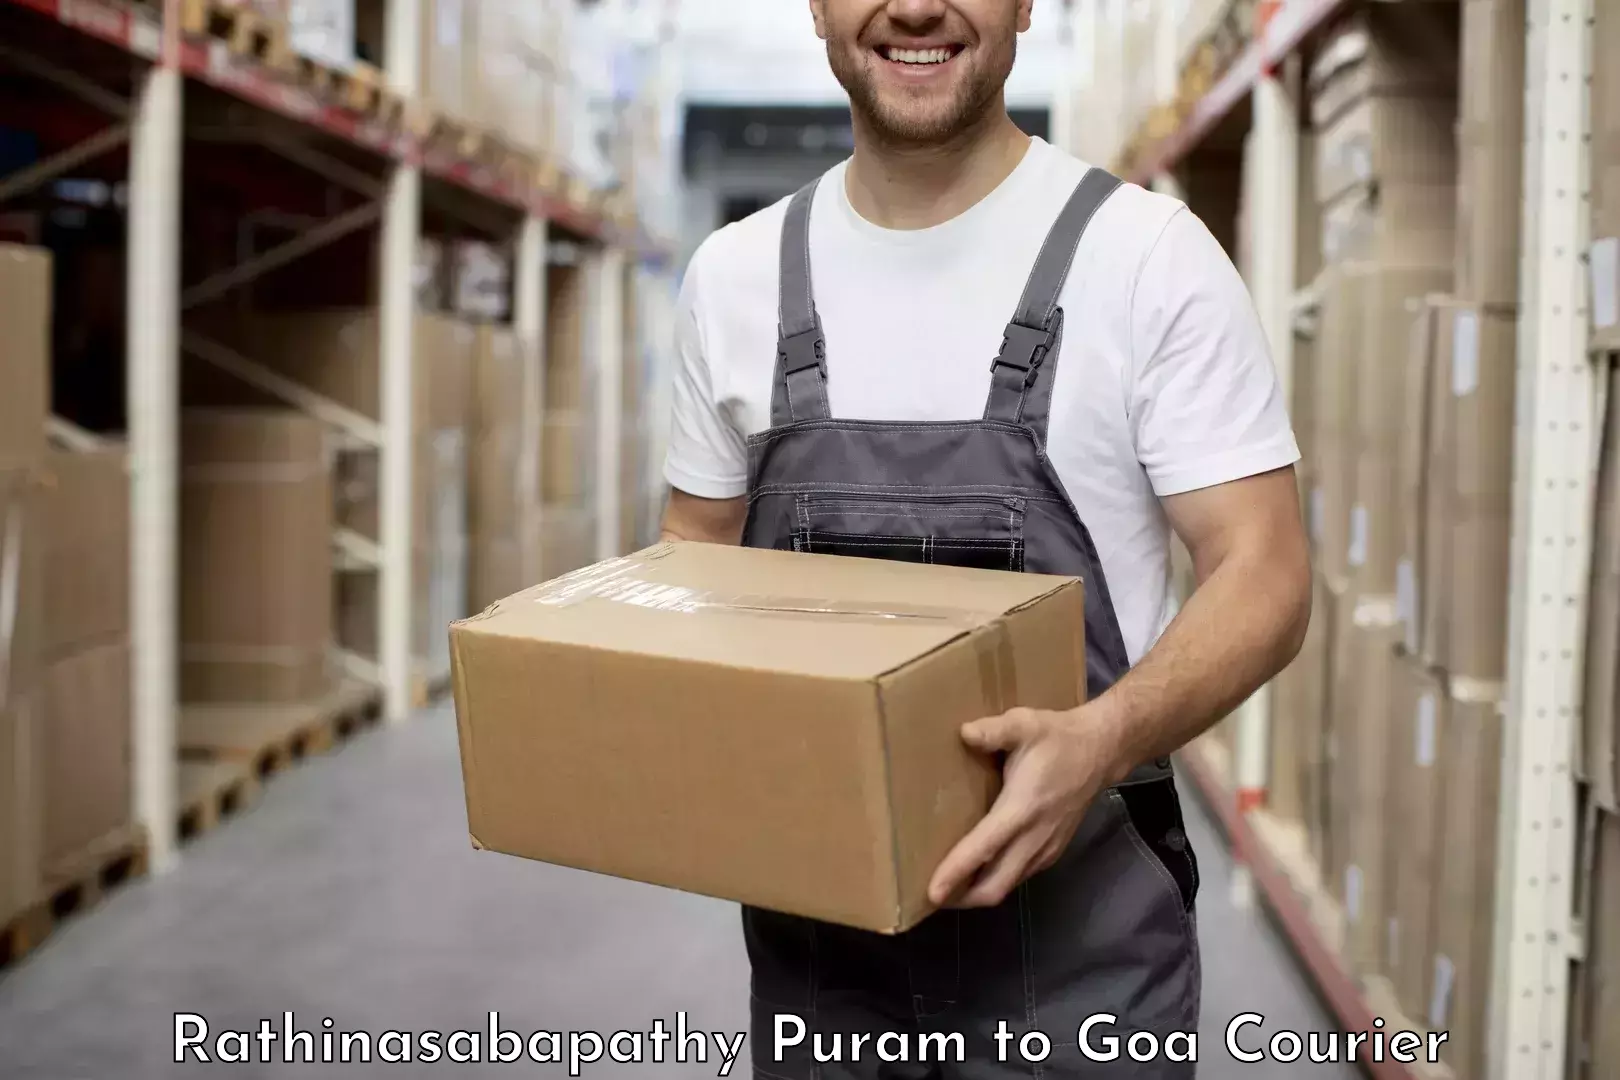 Quality courier partnerships Rathinasabapathy Puram to NIT Goa